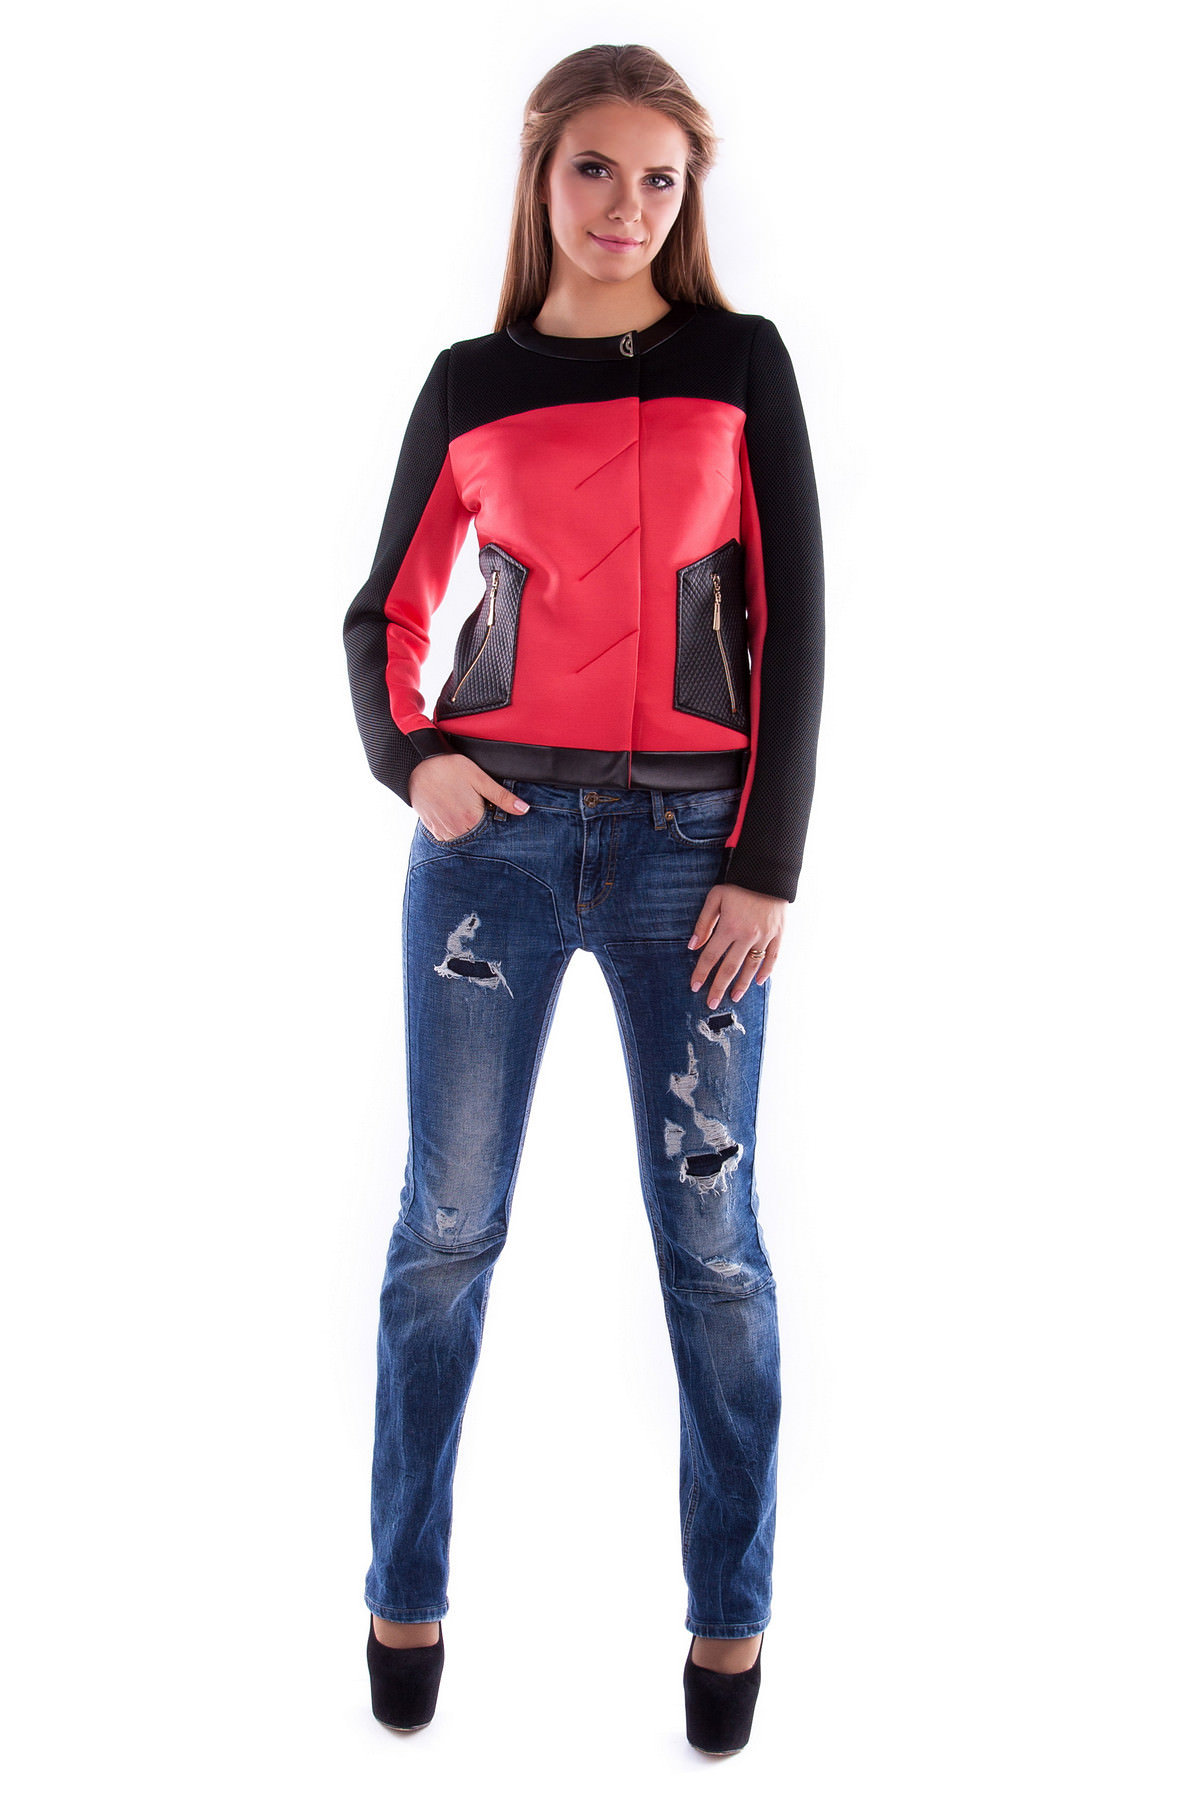 Modus - яркая и стильная одежда для женщин Куртка Торнадо